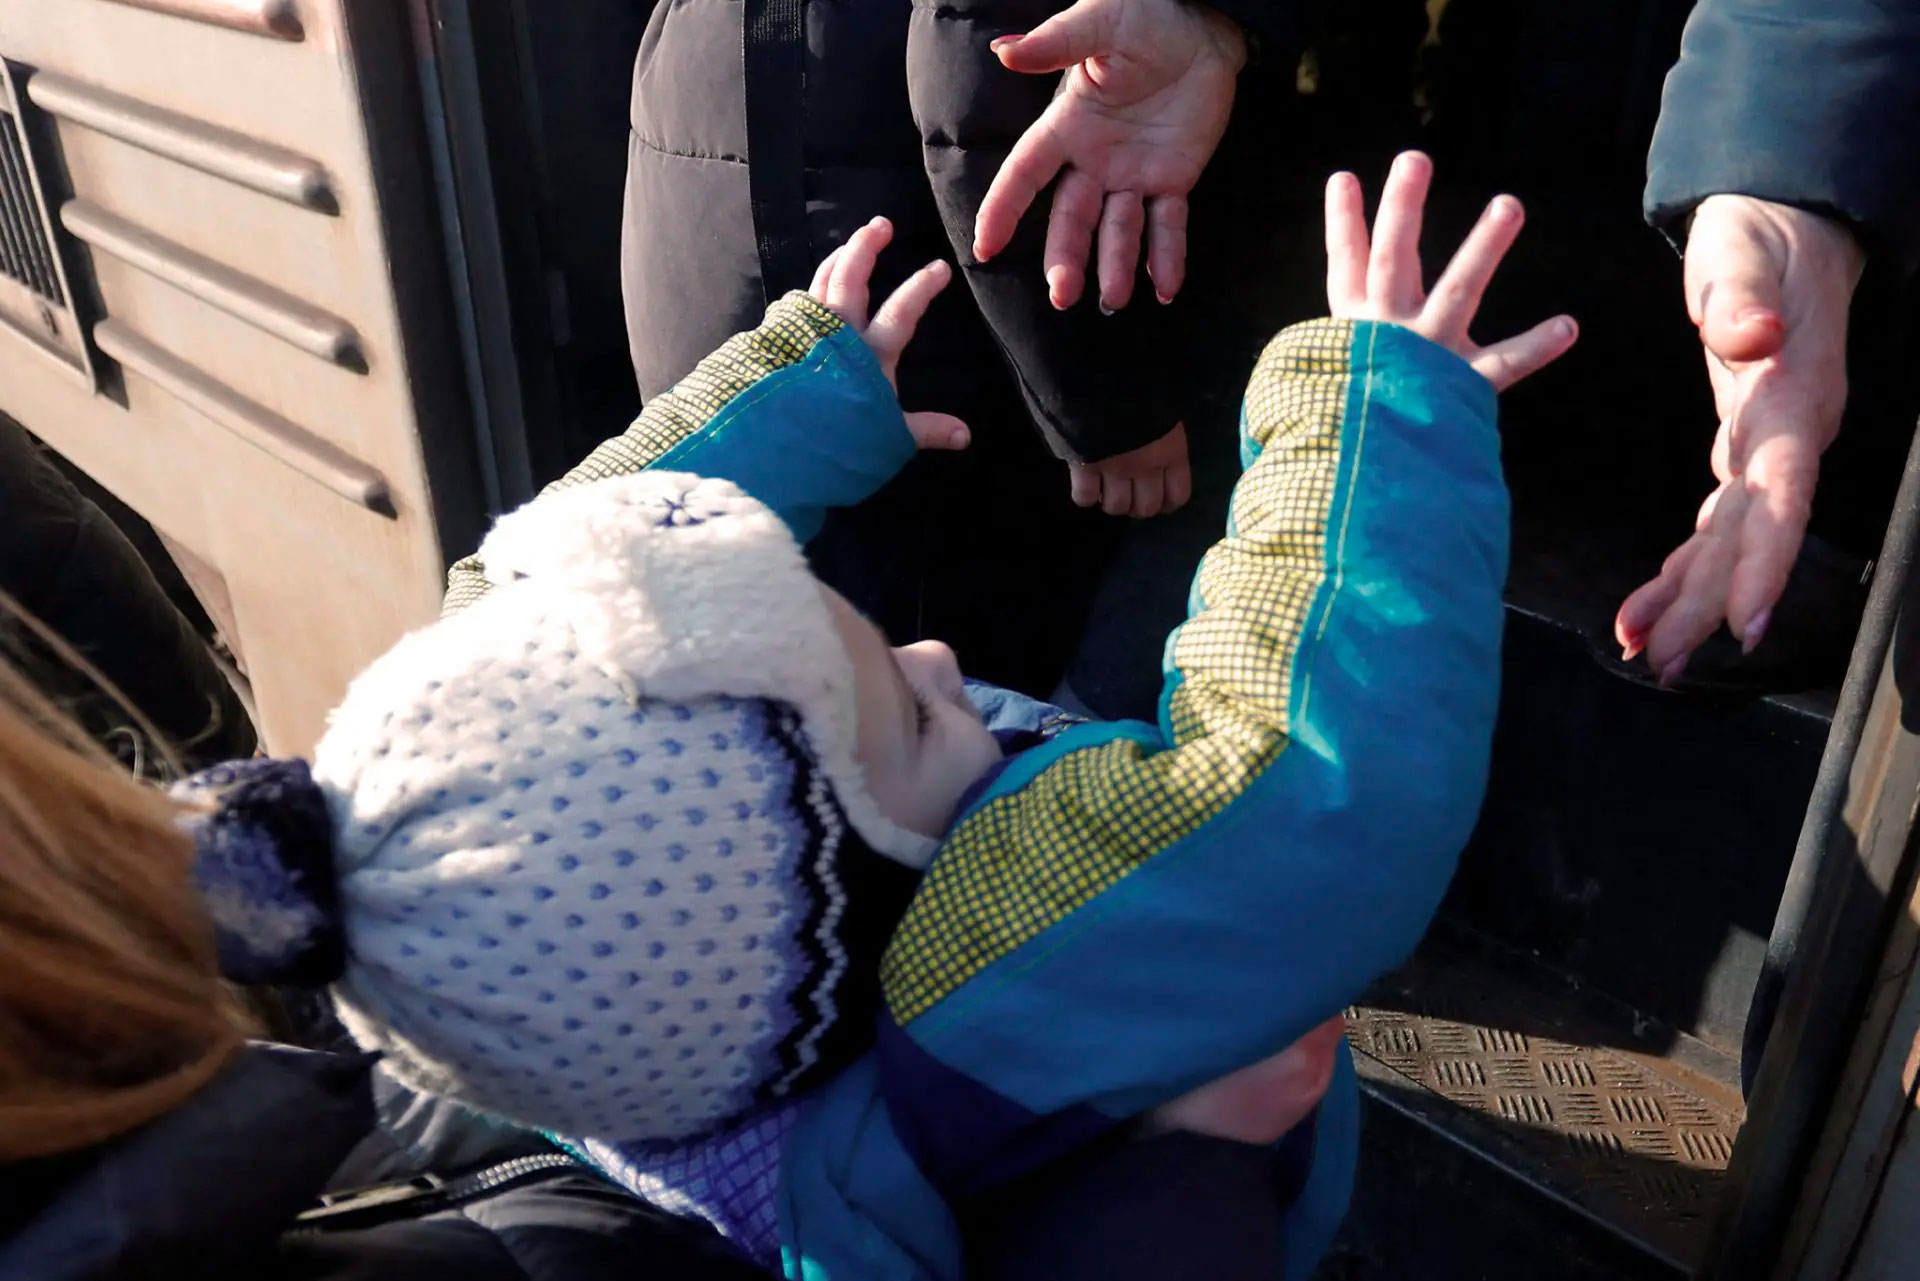 Ett litet barn blir upplyft i en bil av en vuxen person. Fotot är taget av Reuters och tillhandahållet av UNHCR.